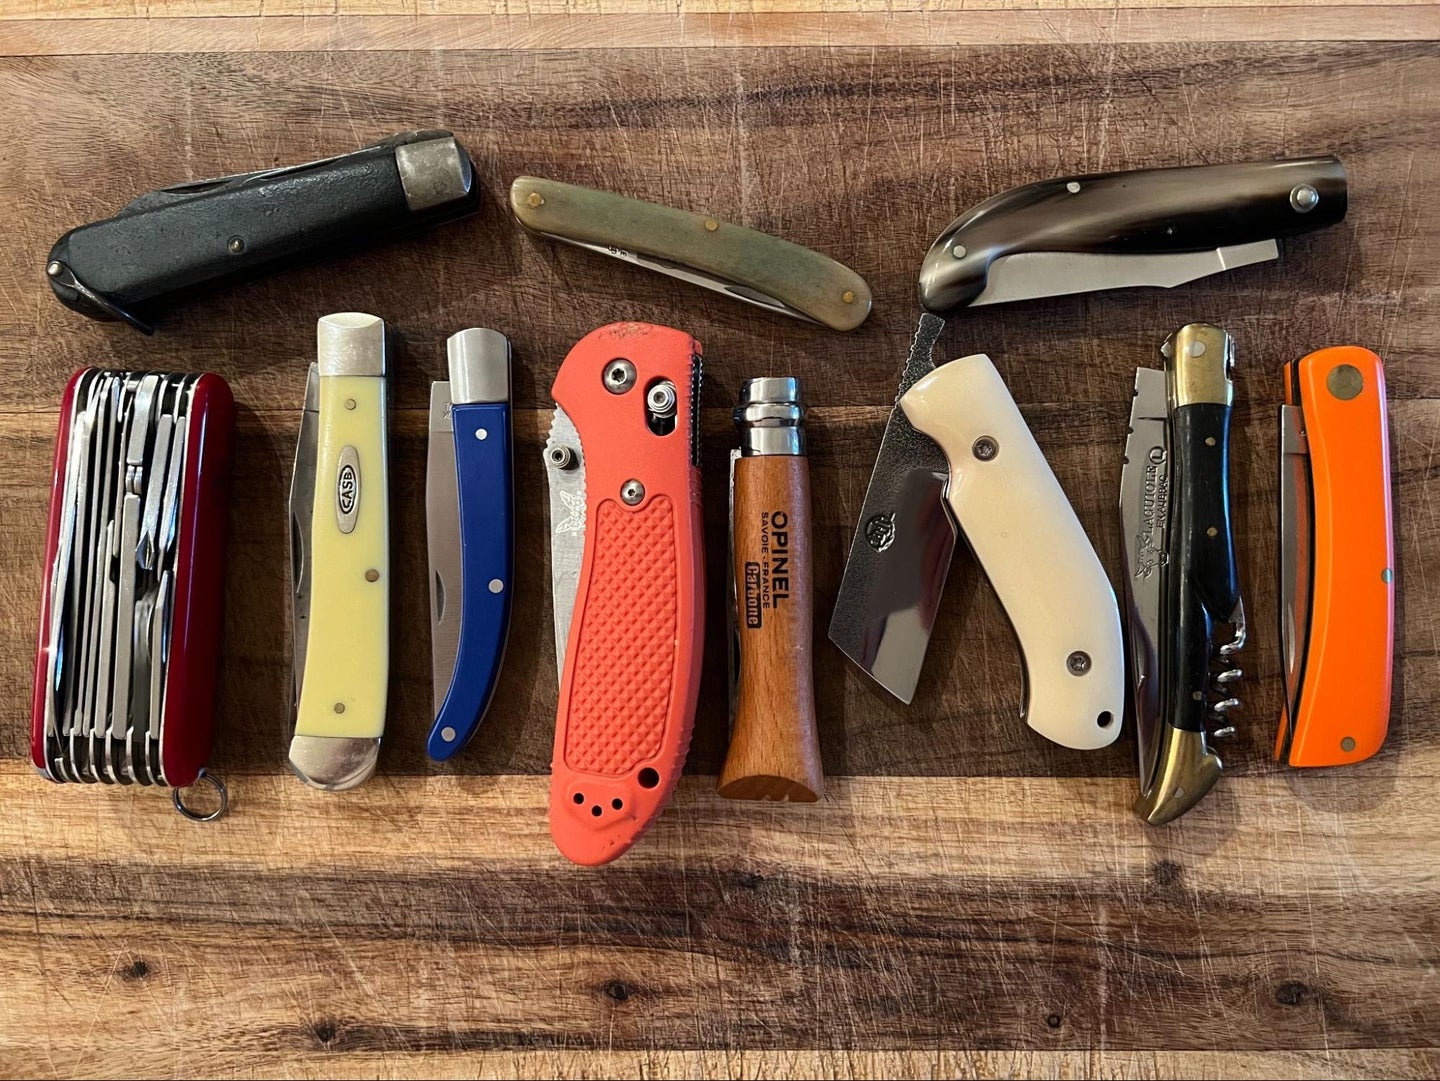 Best pocket knives